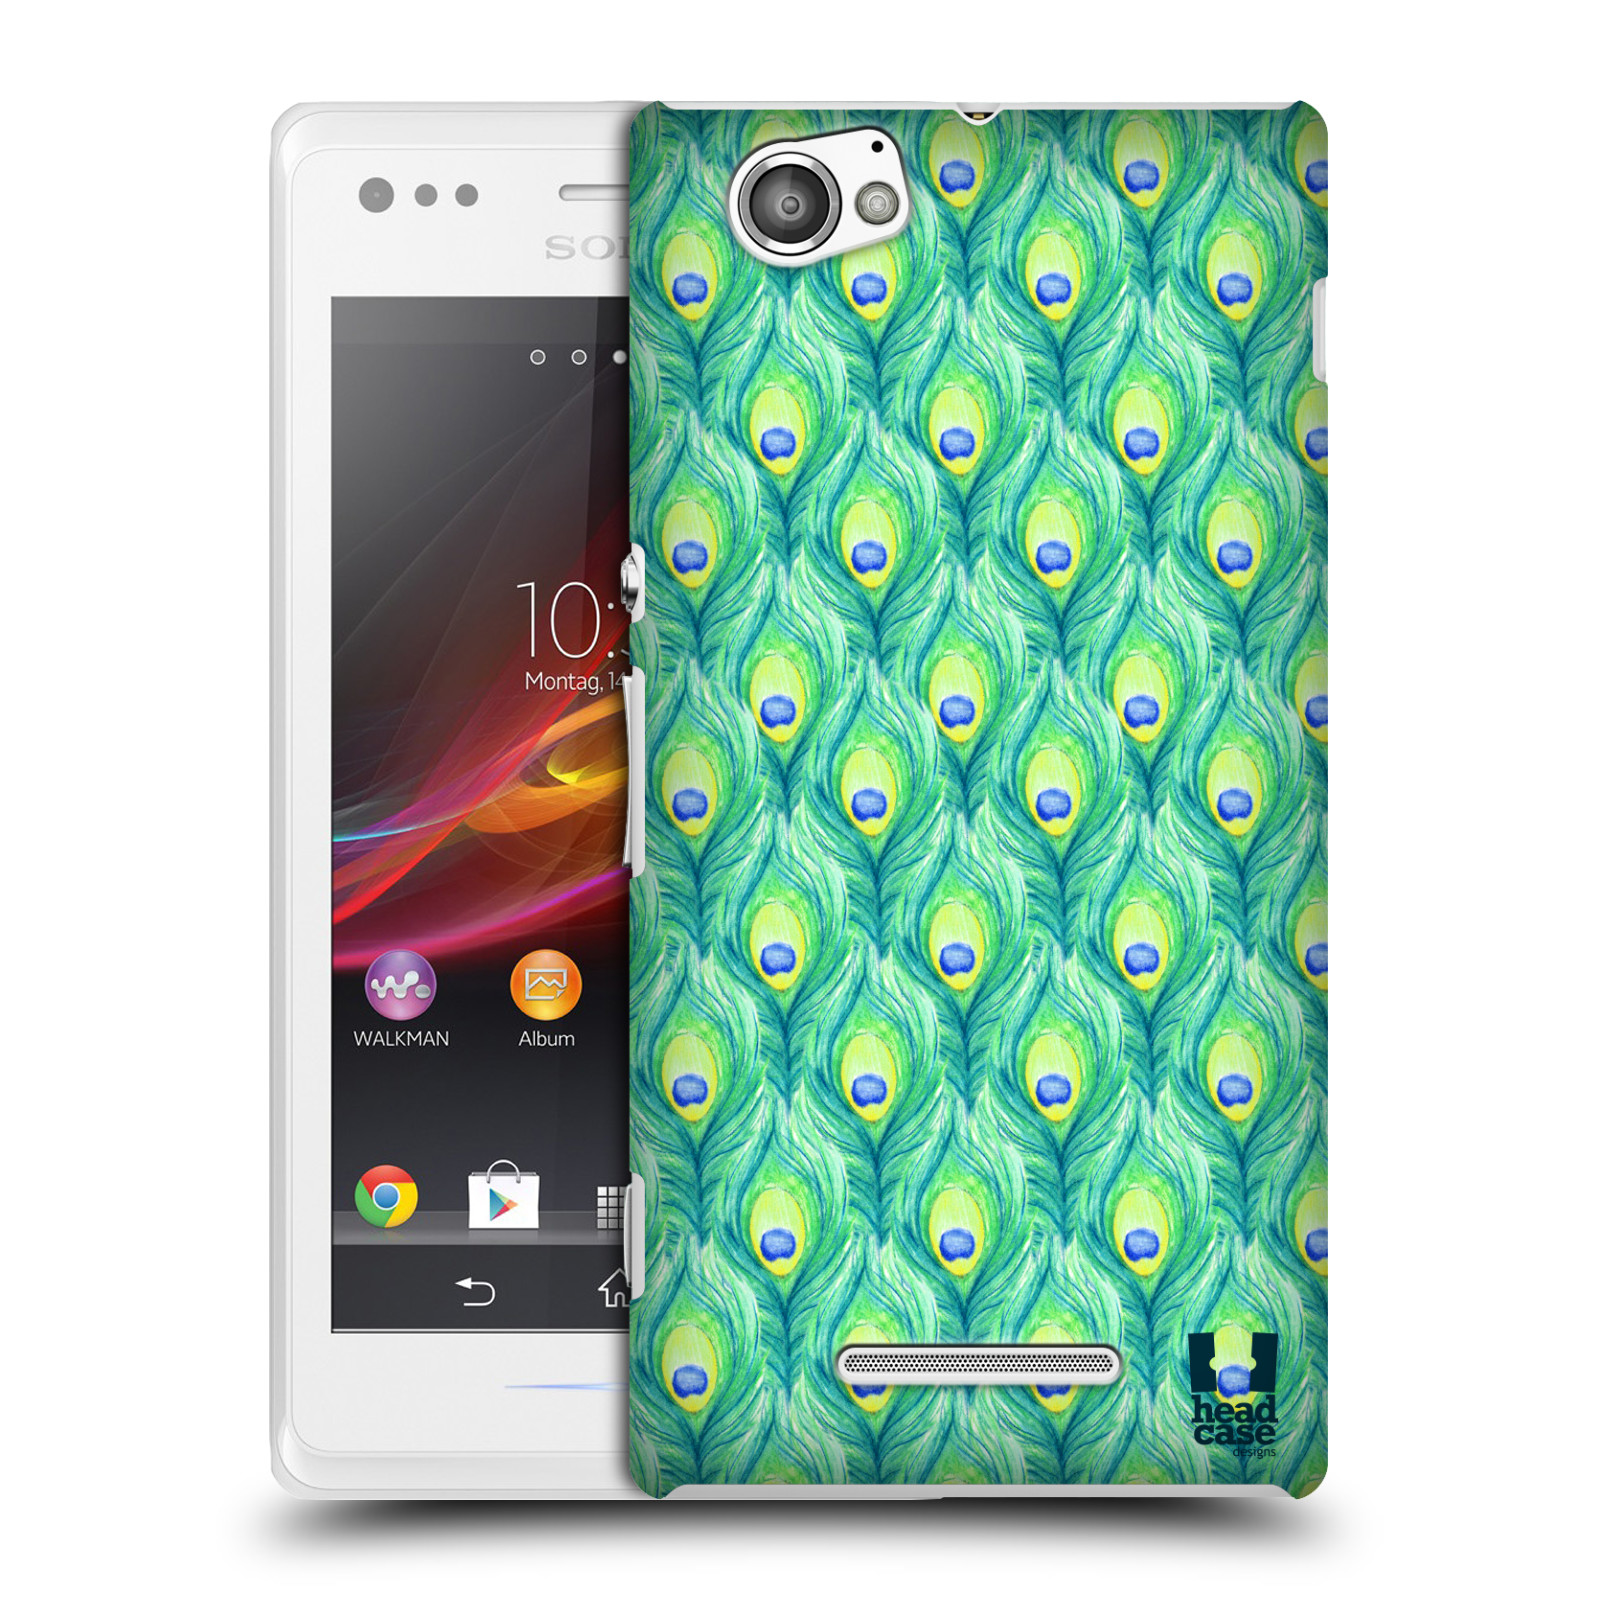 HEAD CASE plastový obal na mobil Sony Xperia M vzor Paví pírka barevná ZELENÁ